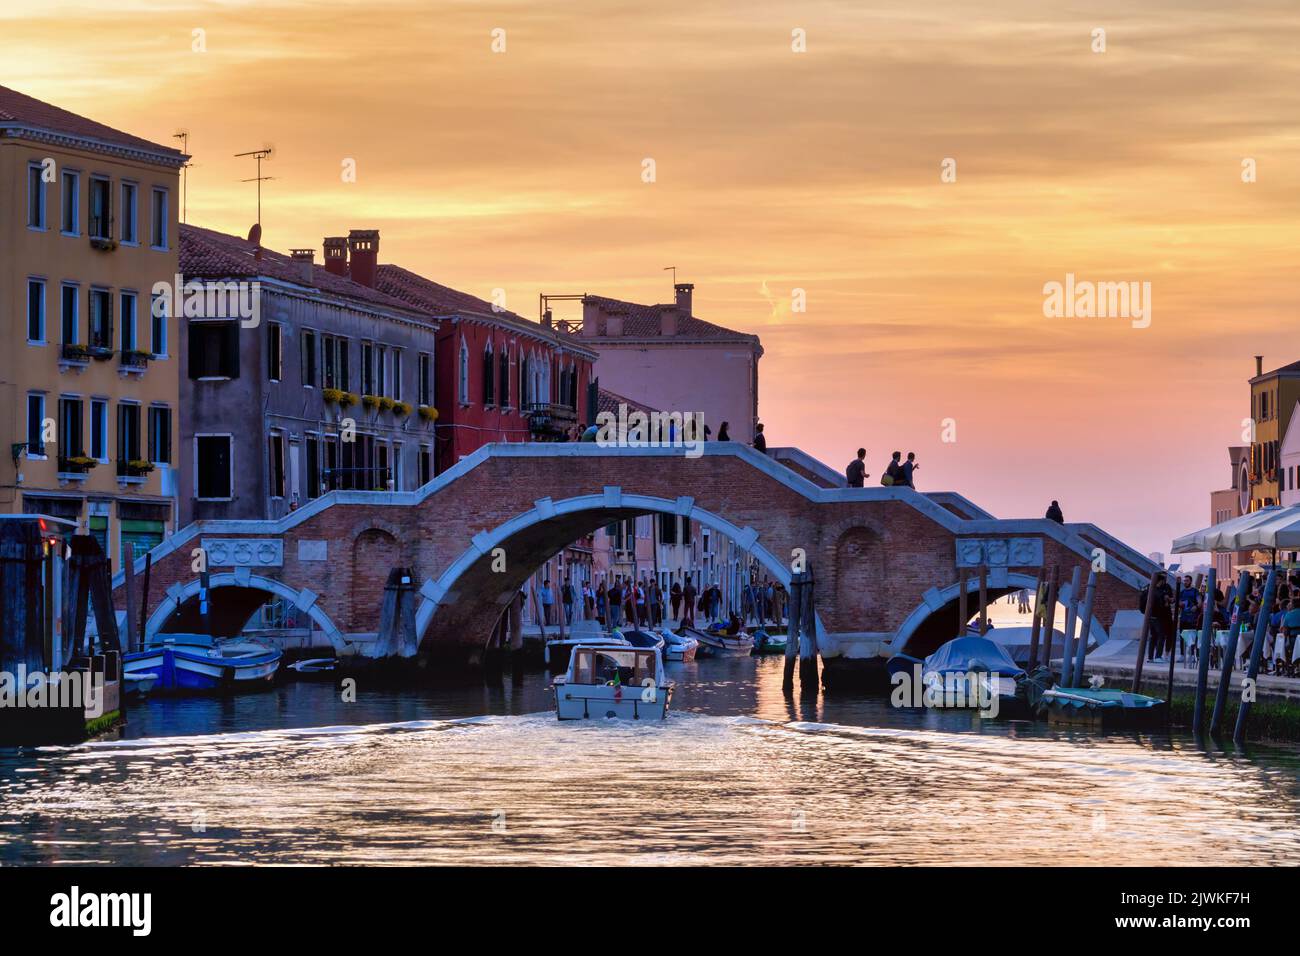 Ponte dei Tre Archi, sur le canal de Cannaregio, Venise, Italie. Pont Three Arches. Banque D'Images